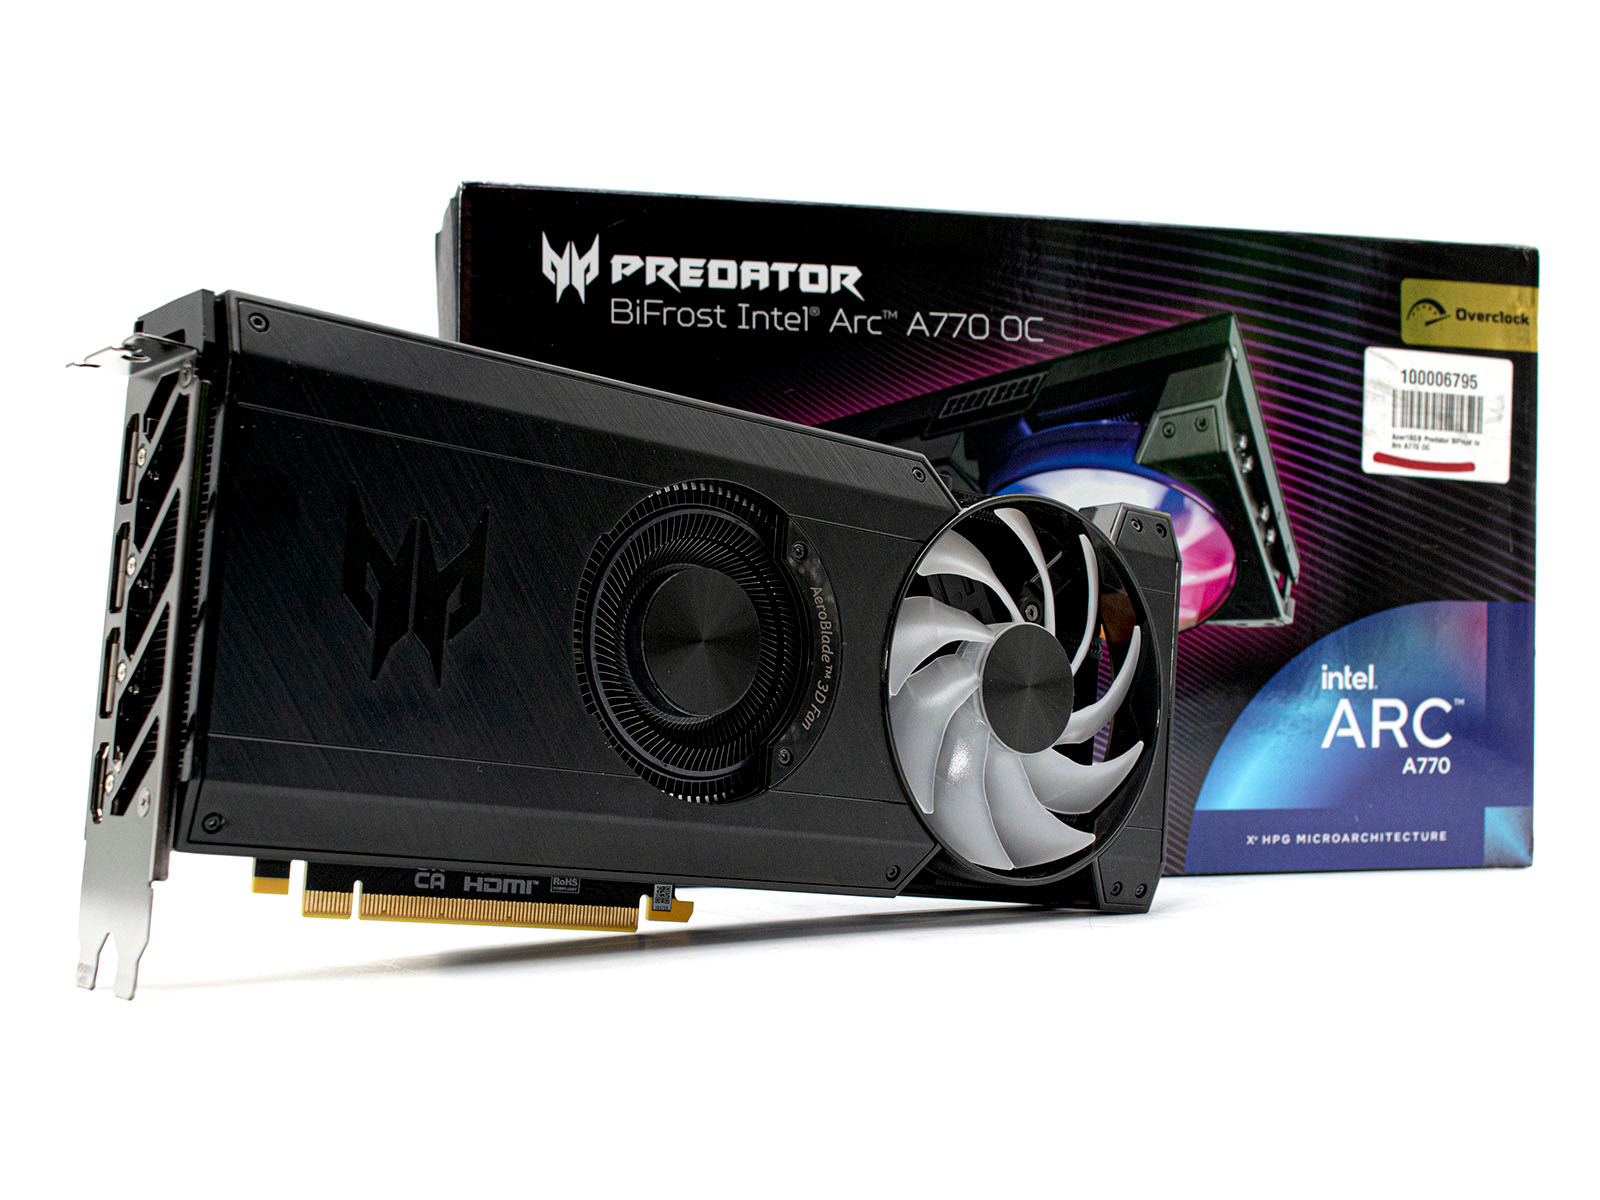 Counter Strike 2: Testes com placas de vídeo AMD Radeon e NVIDIA GeForce